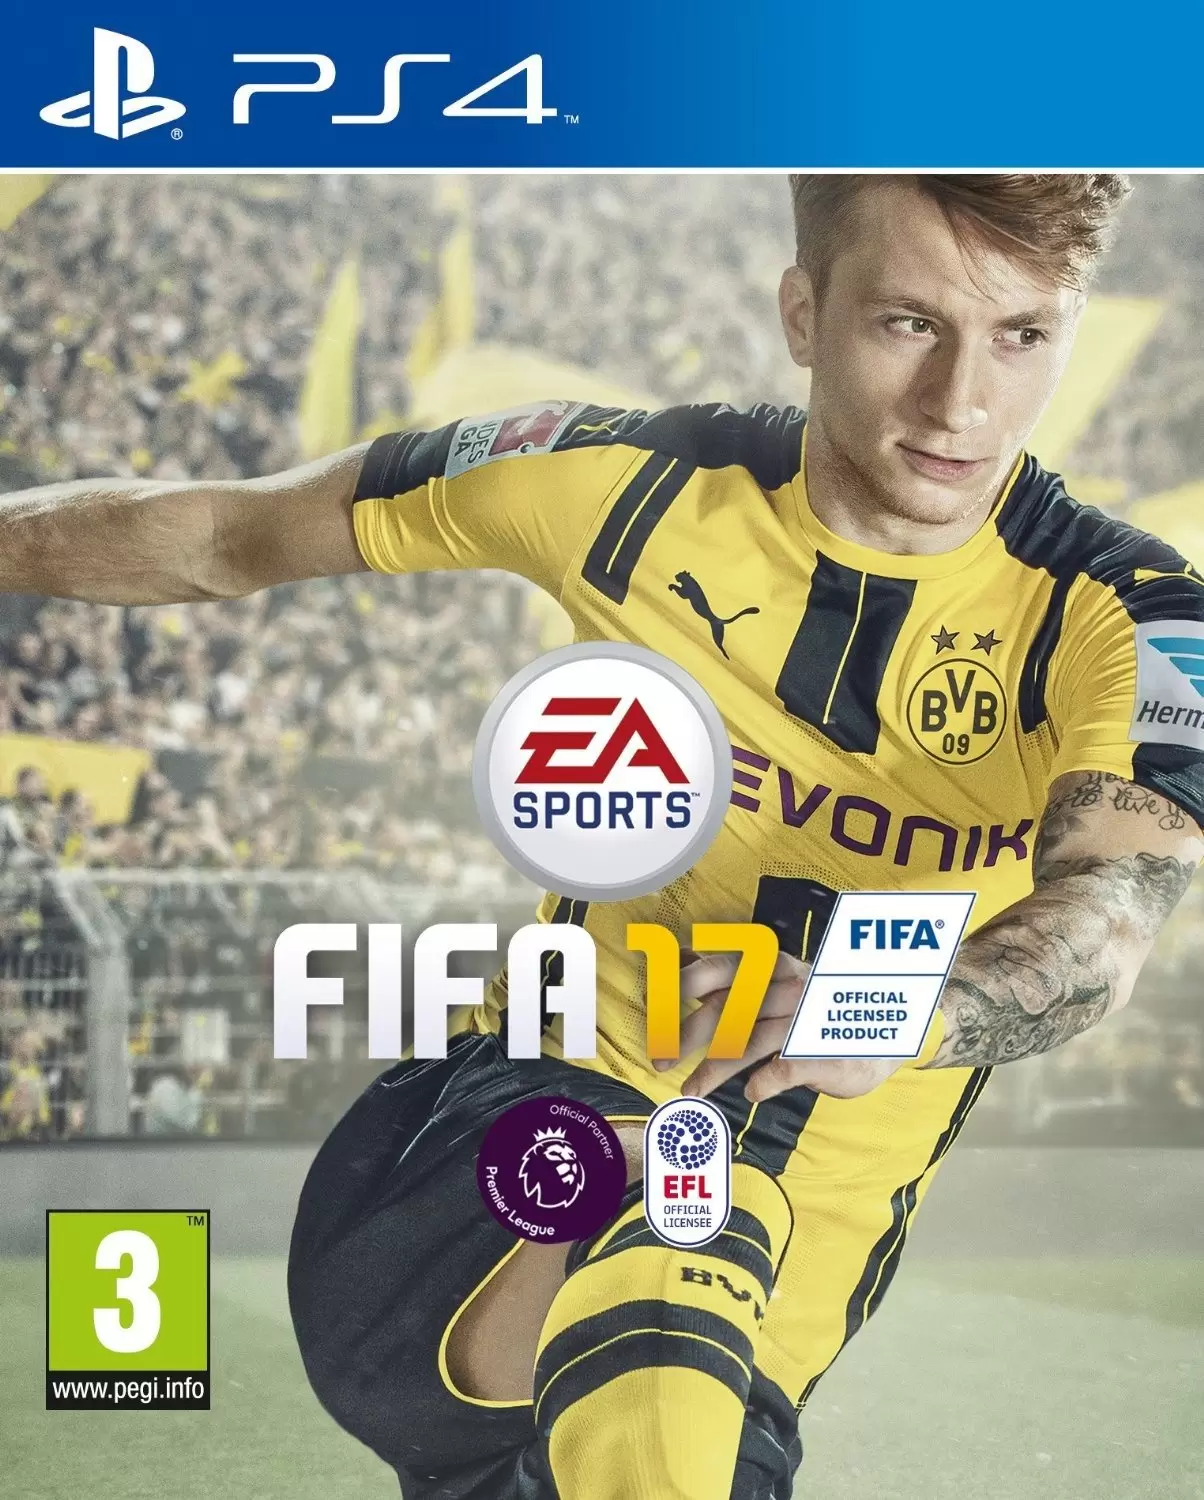 PS4 Games - FIFA 17